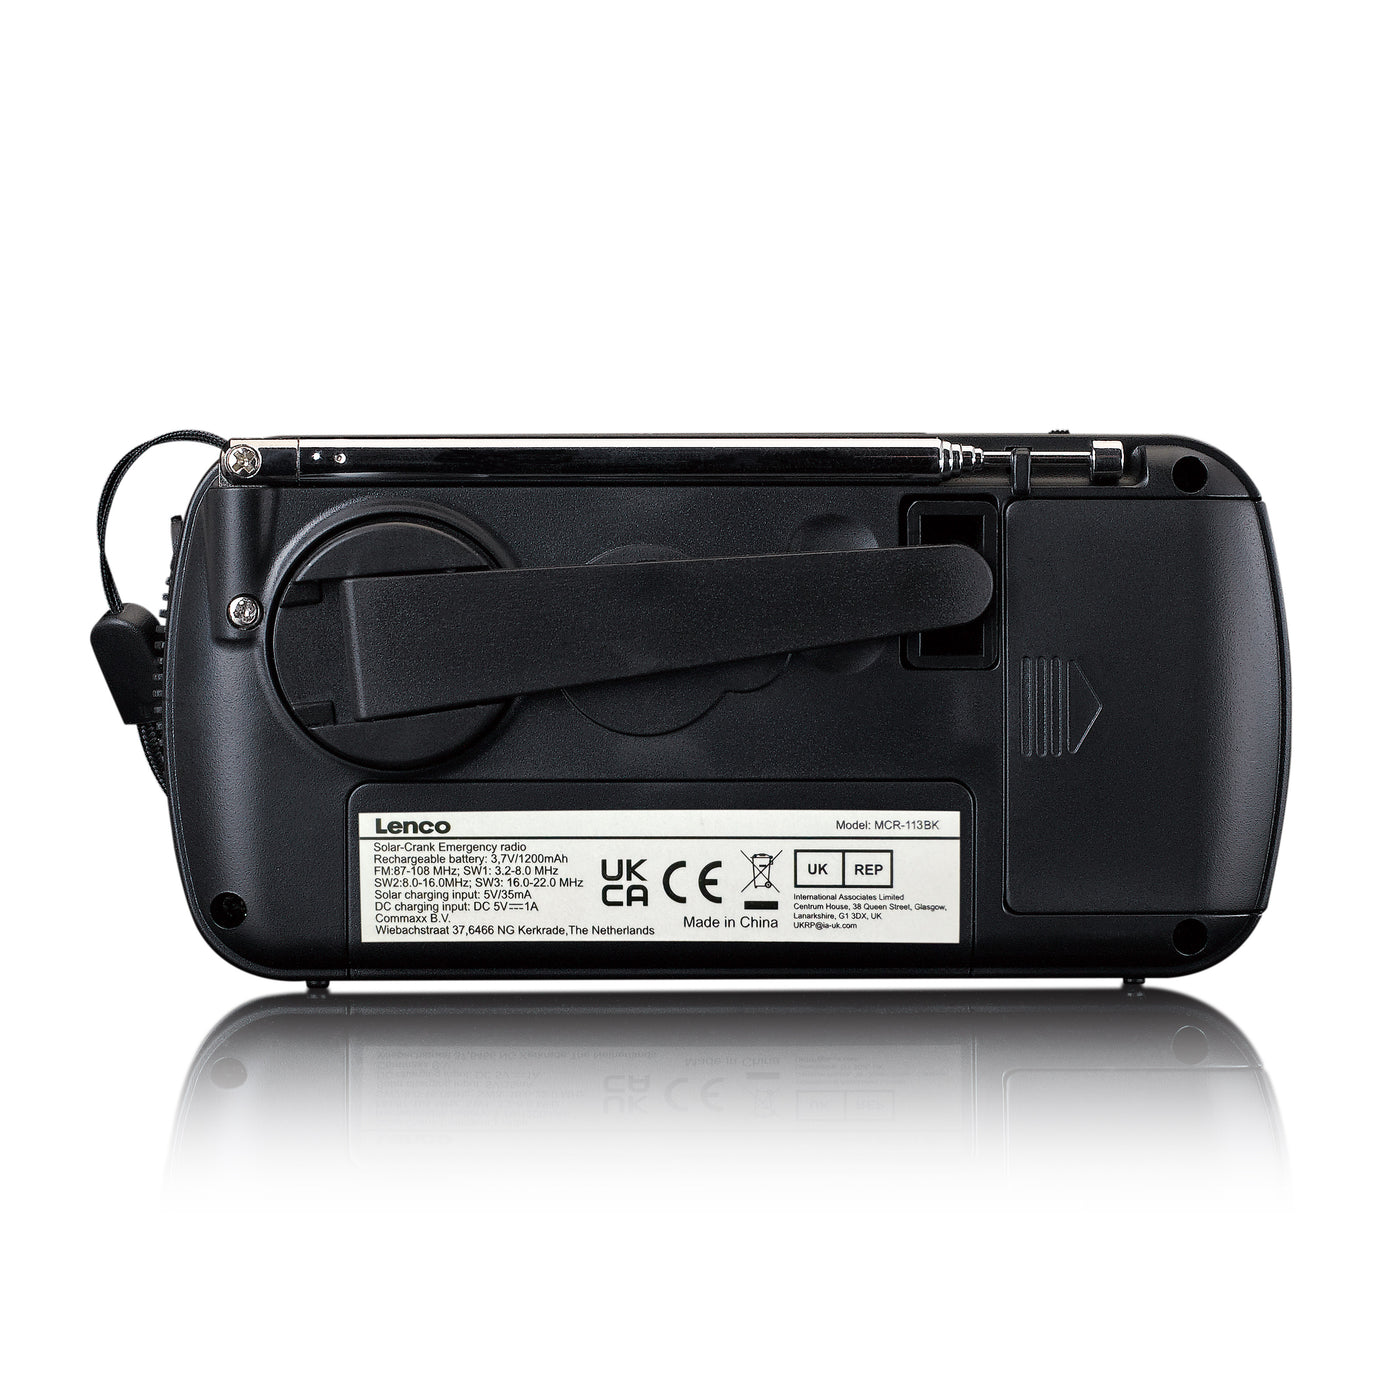 Lenco MCR-112BK - Tragbares Notfall Kurbelradio mit Aufziehfunktion, Taschenlampe und Powerbank in einem - Schwarz